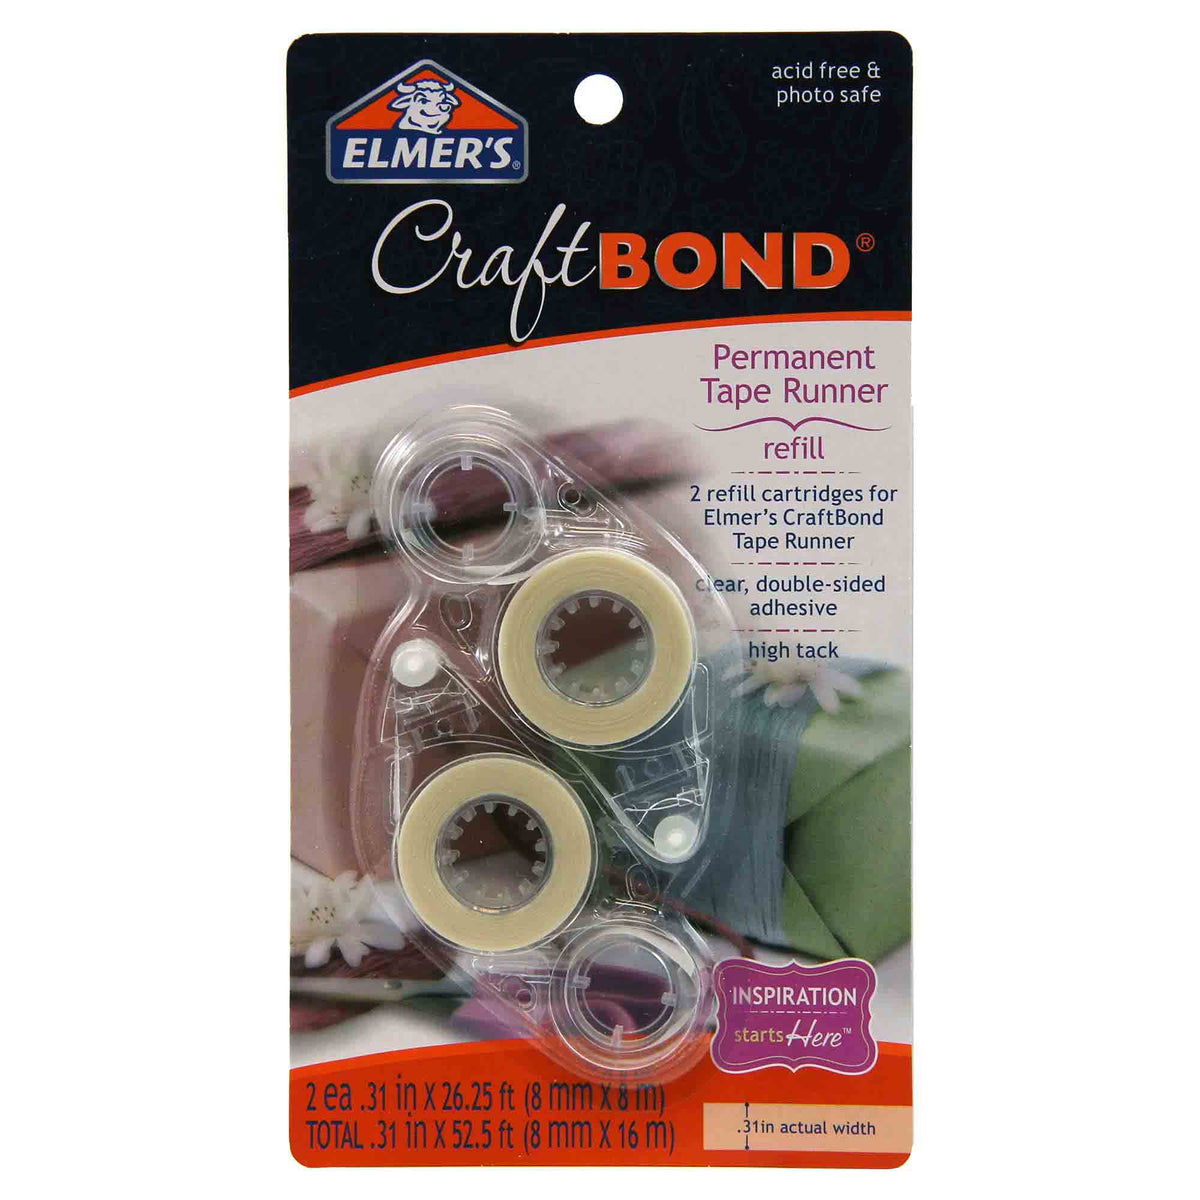 Find more Elmer's Craft Bond Permanent Tape Runner Refill-brand